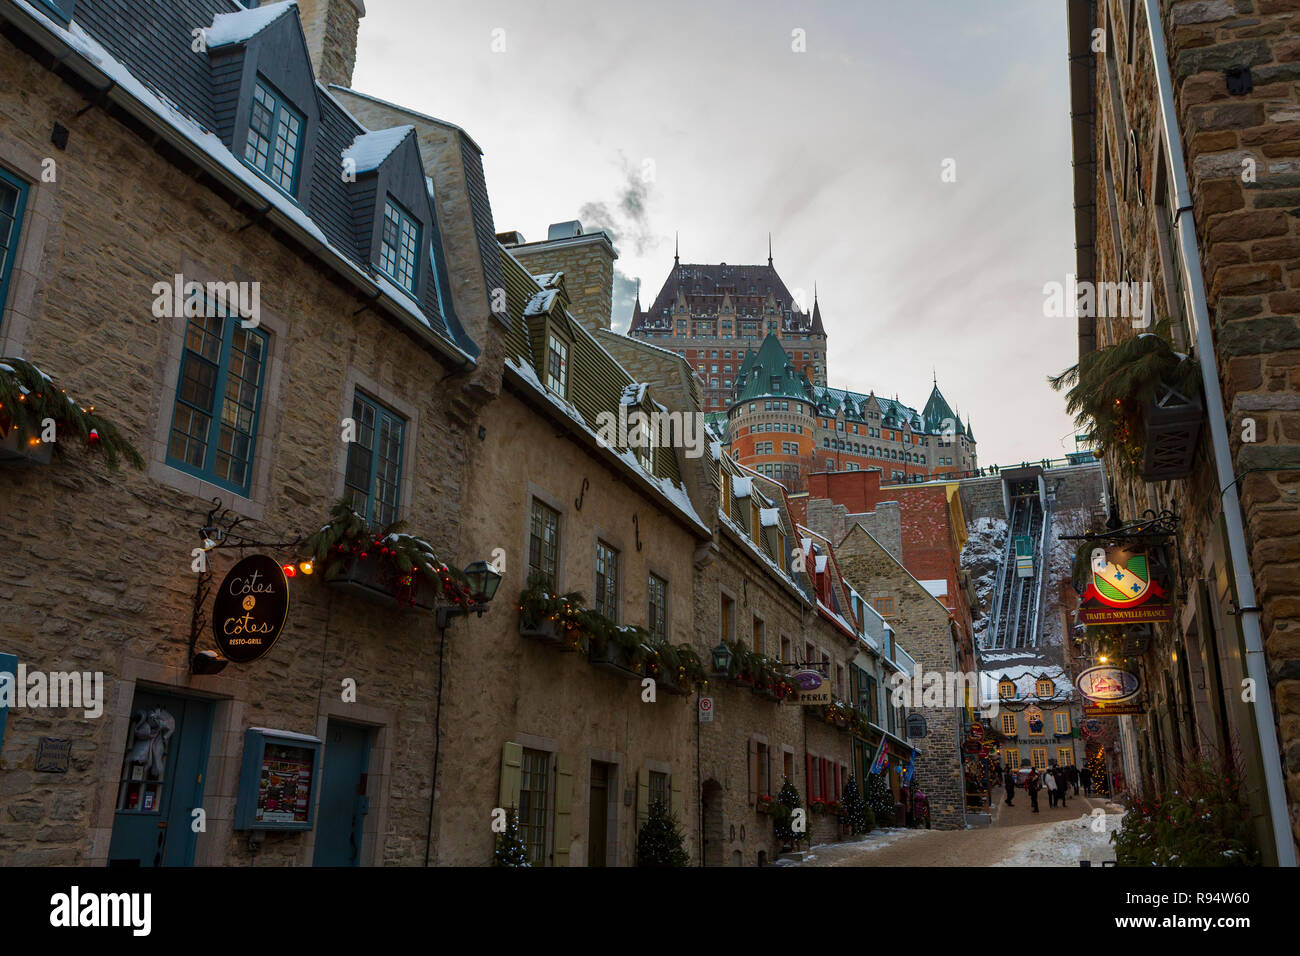 La ville de Québec, Québec, Canada est la plus ancienne colonie européenne en Amérique du Nord et la seule ville fortifiée au nord du Mexique dont les murs existent encore. Banque D'Images